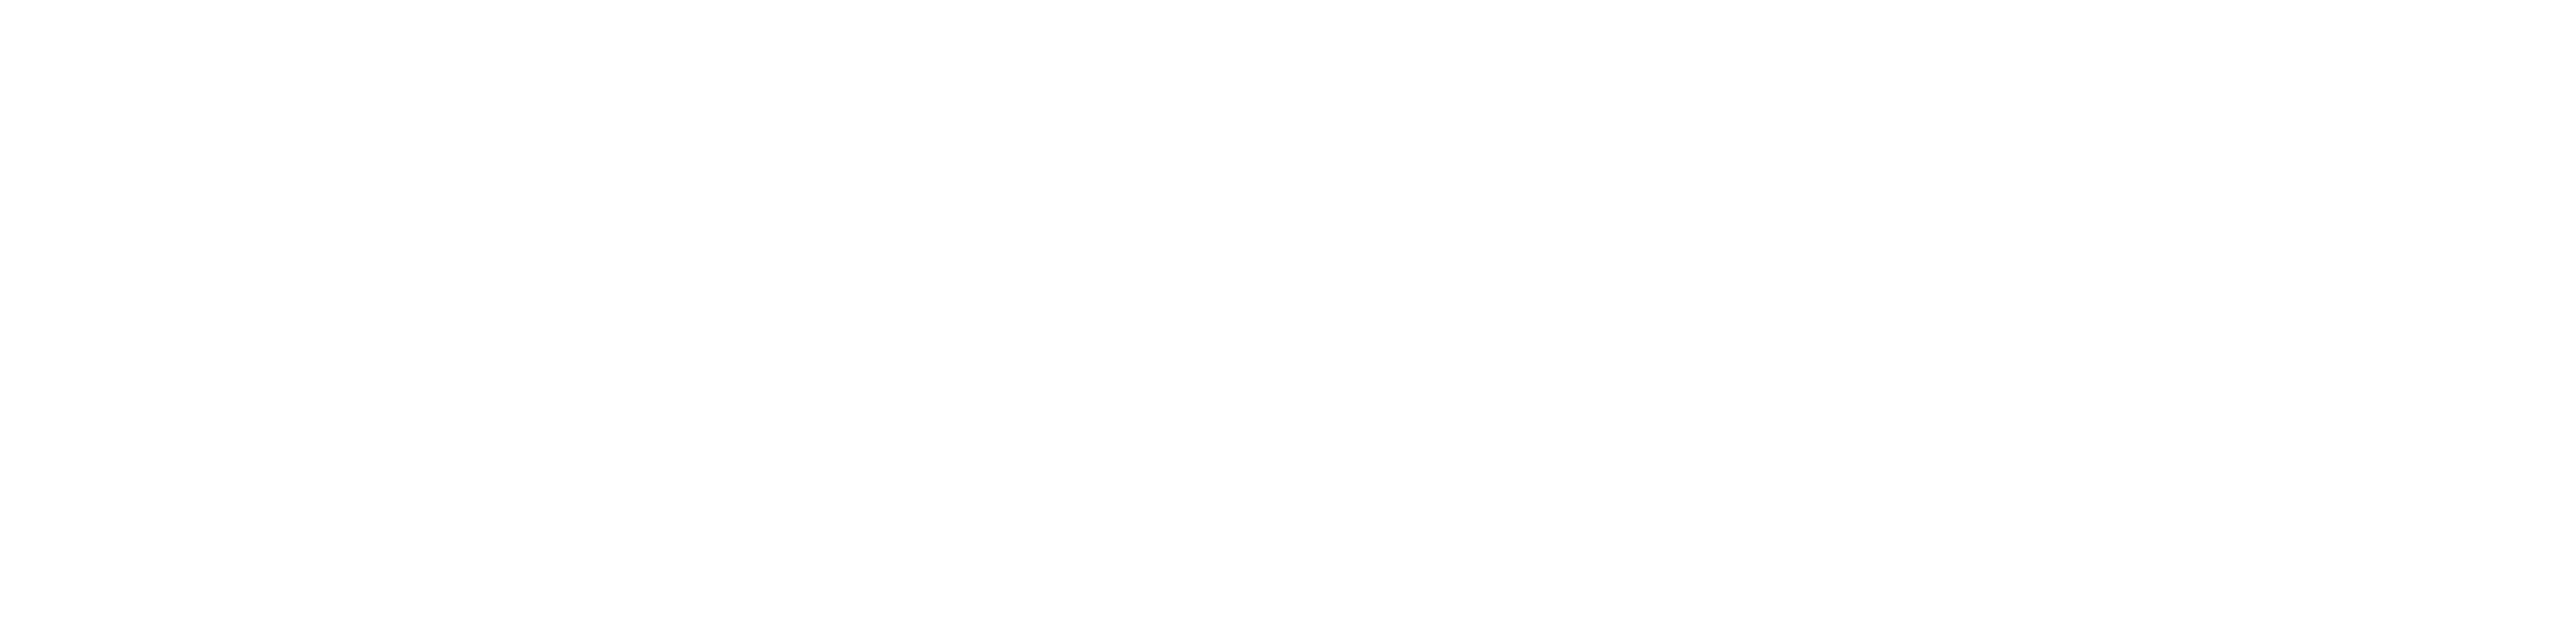 SDS2 Summit 2022 - October 19-20 | San Antonio, TX